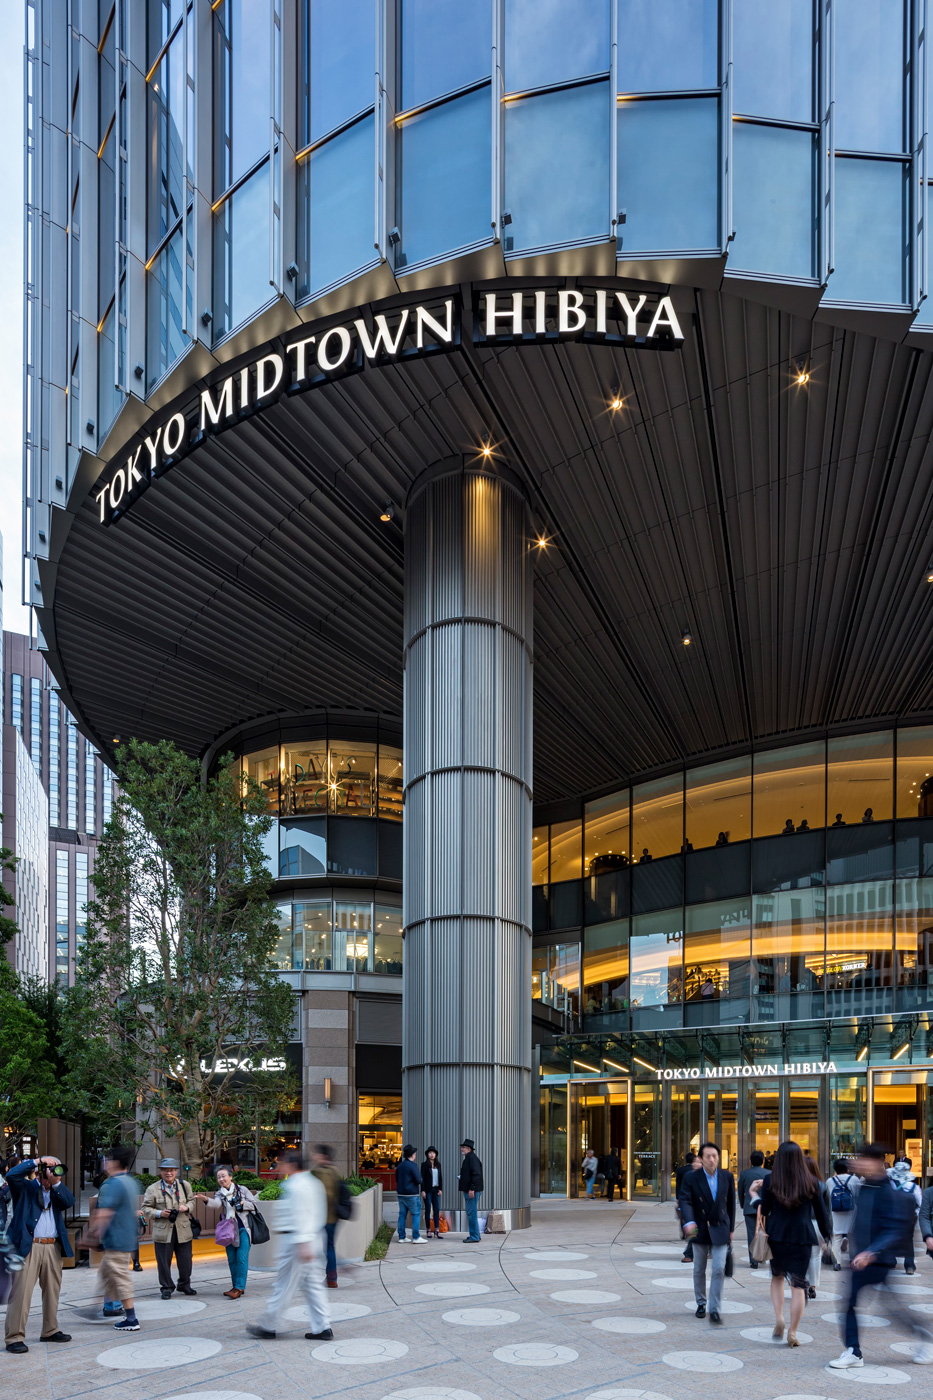 Tokyo Midtown Hibiya